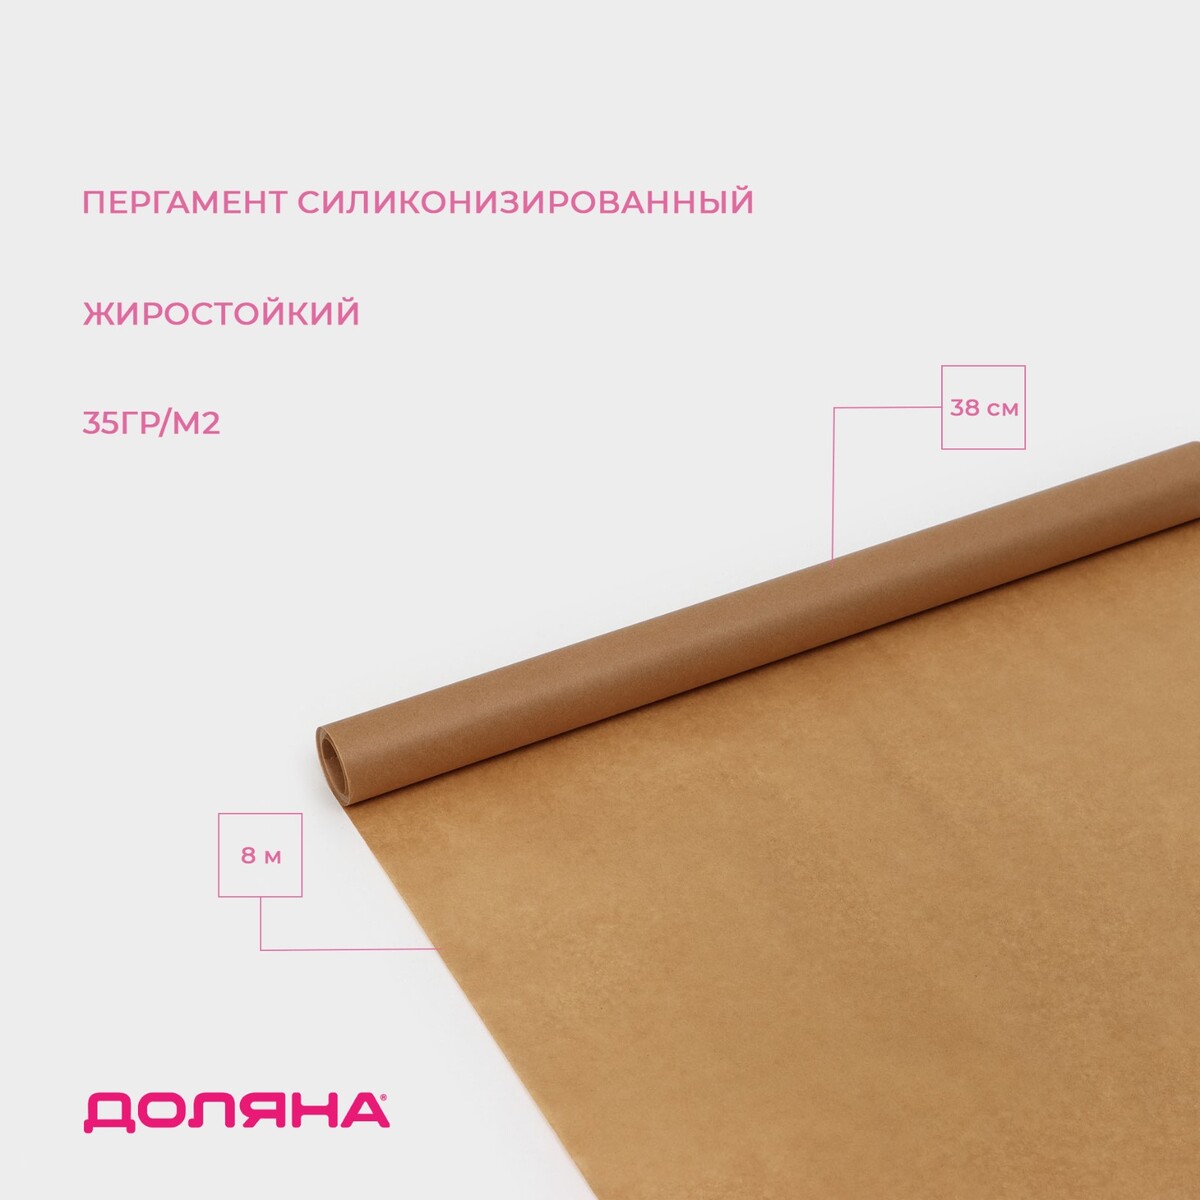 Пергамент силиконизированный доляна, 38 см х 8 м, коричневый, жиростойкий пергамент силиконизированный доляна 28 см×50 м белый жиростойкий